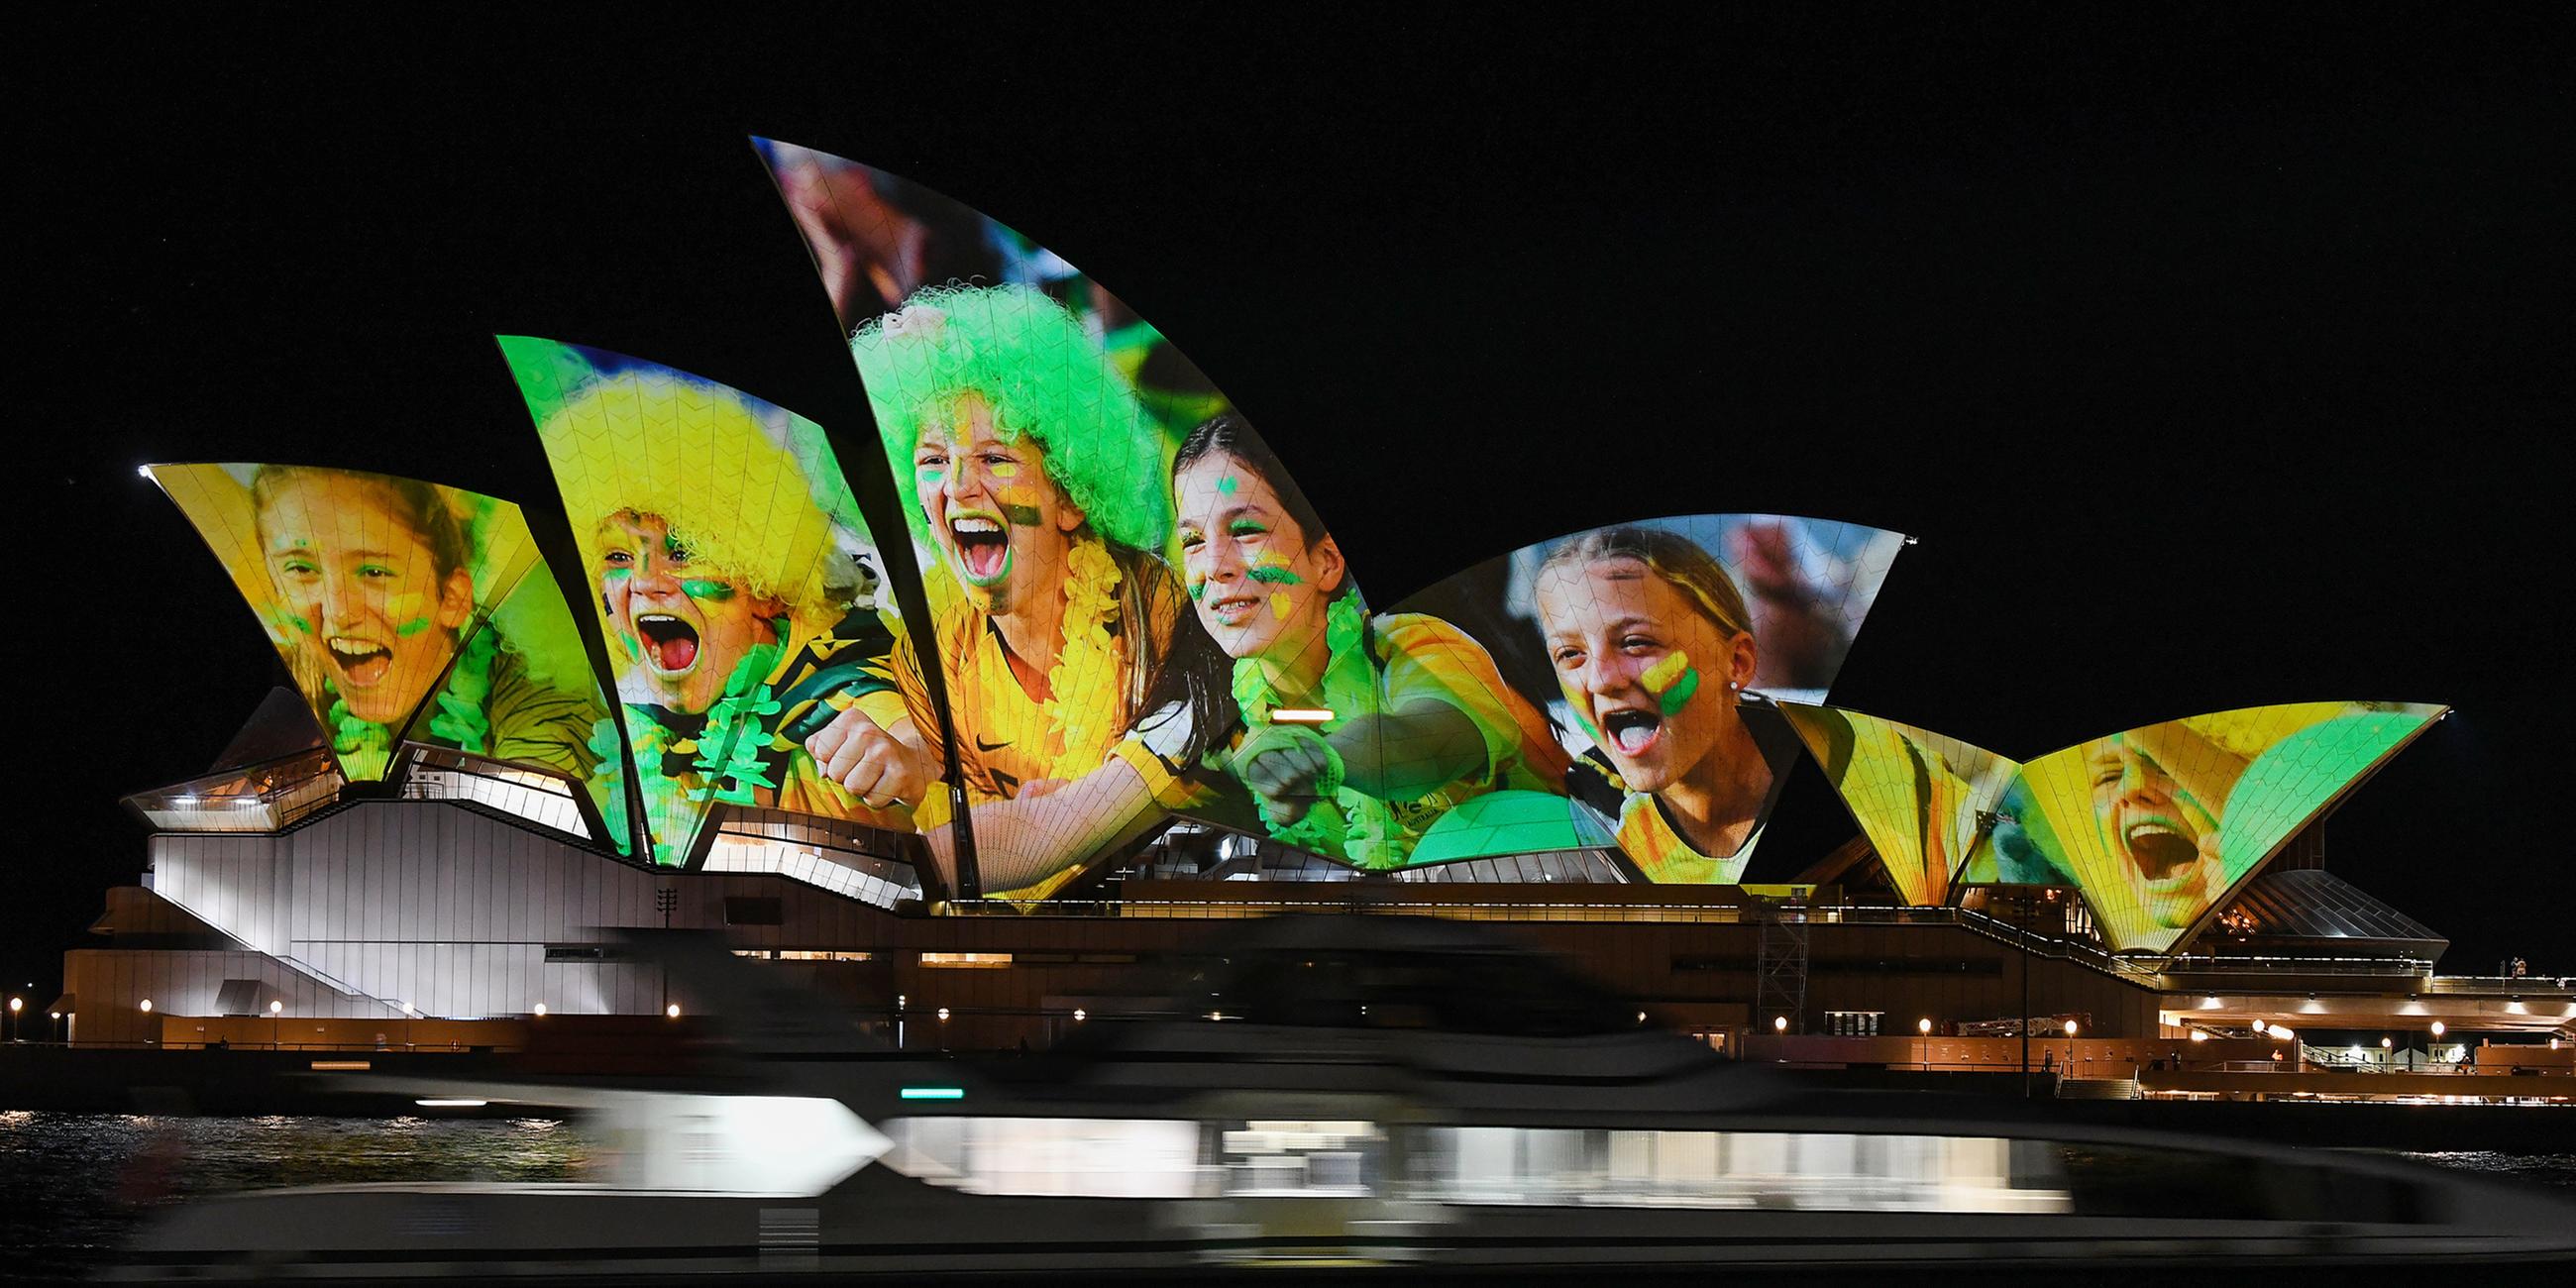 Das Opernhaus ist mit leuchtenden bunten Fotos von Fußball-Fans angestrahlt, um auf die beiden Austragungsorte der Frauenfußball-WM 2023 hinzuweisen: Australien und Neuseeland.